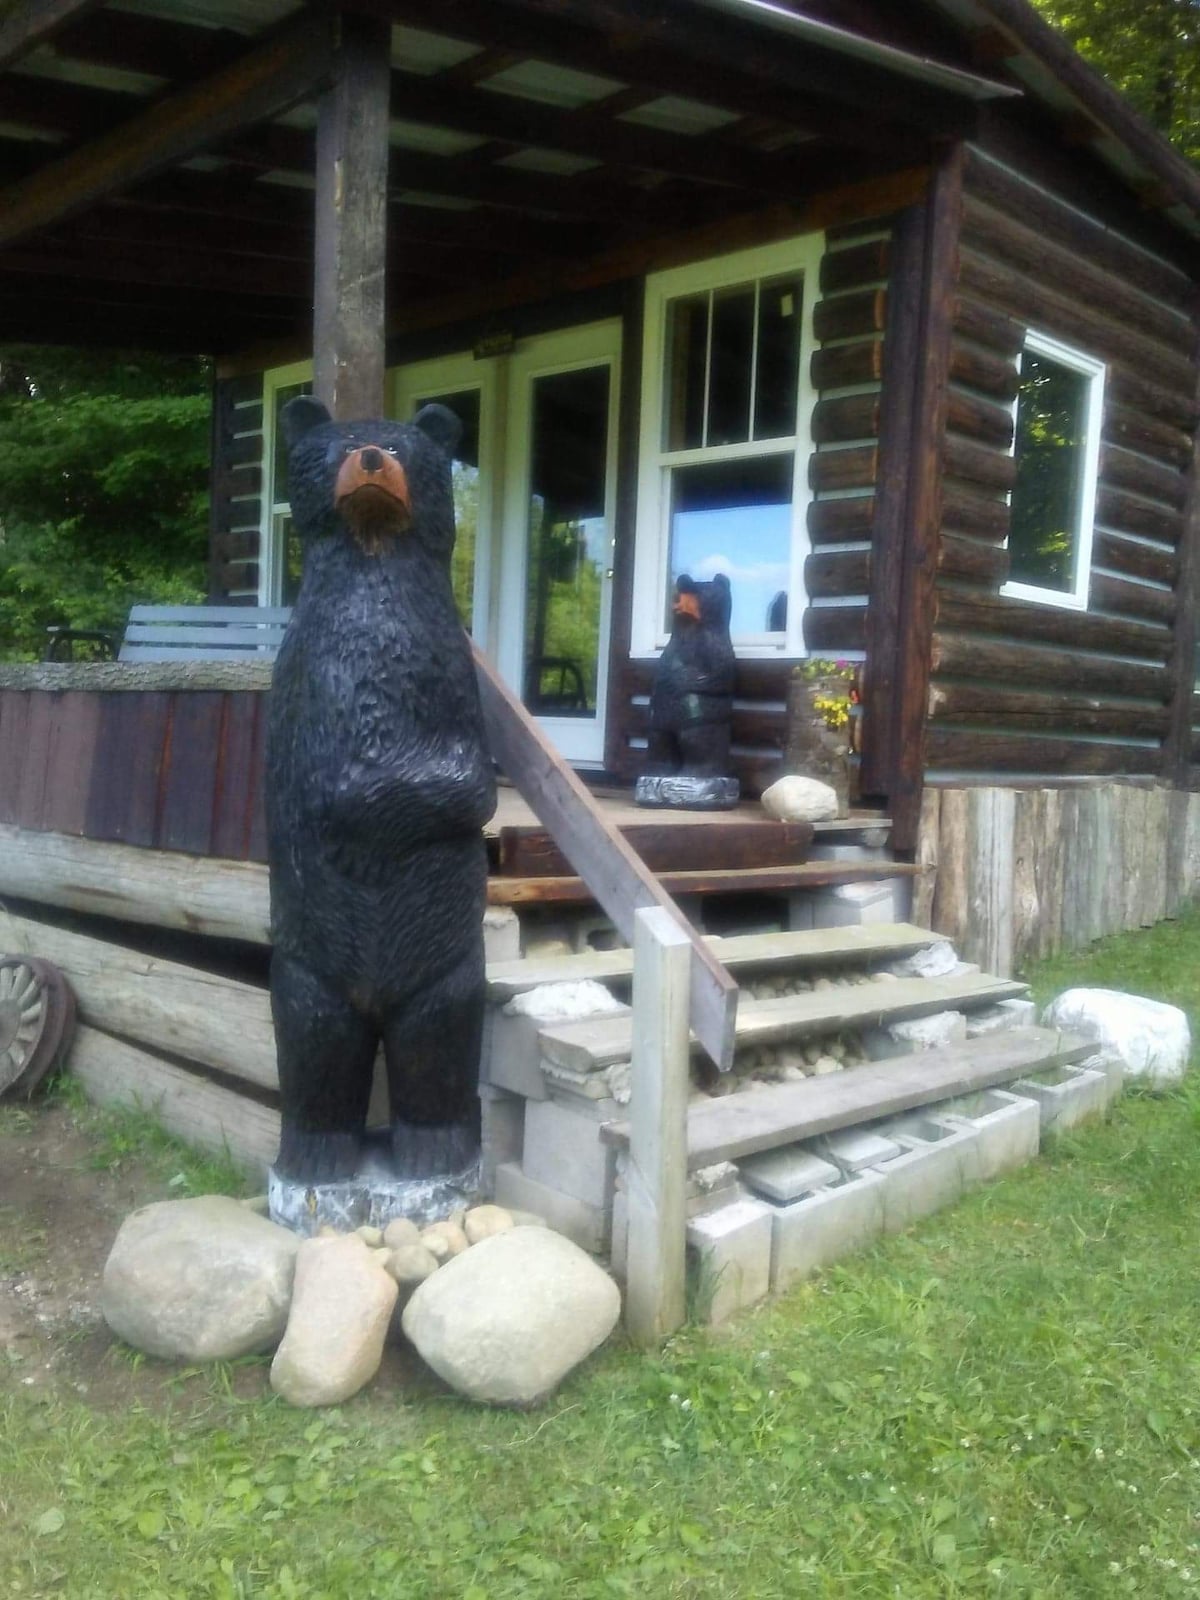 Riverside cabin
Bear cabin